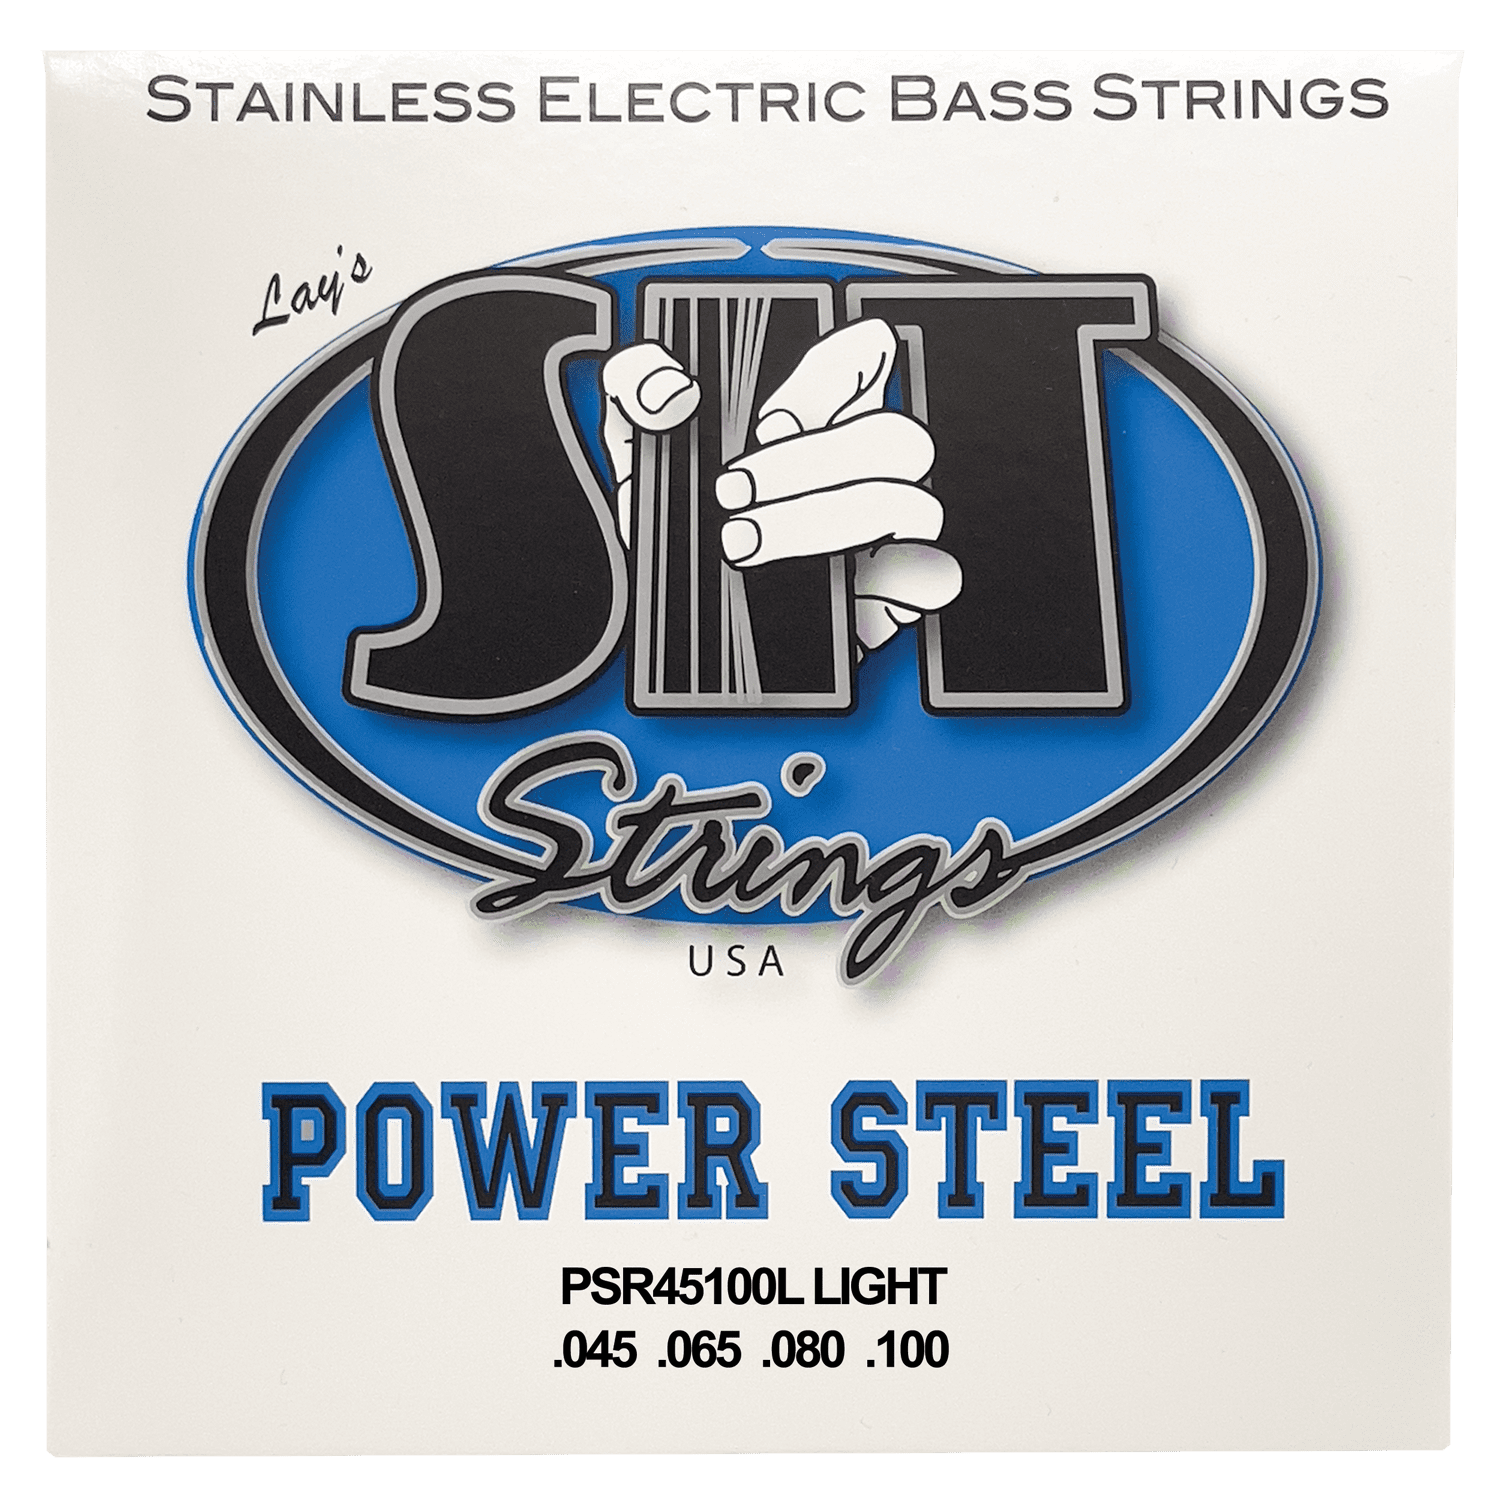 SIT POWER STEEL STAINLESS STEEL BASS - HIENDGUITAR PSR45100L LIGHT PSR45100L LIGHT SIT Bass Strings